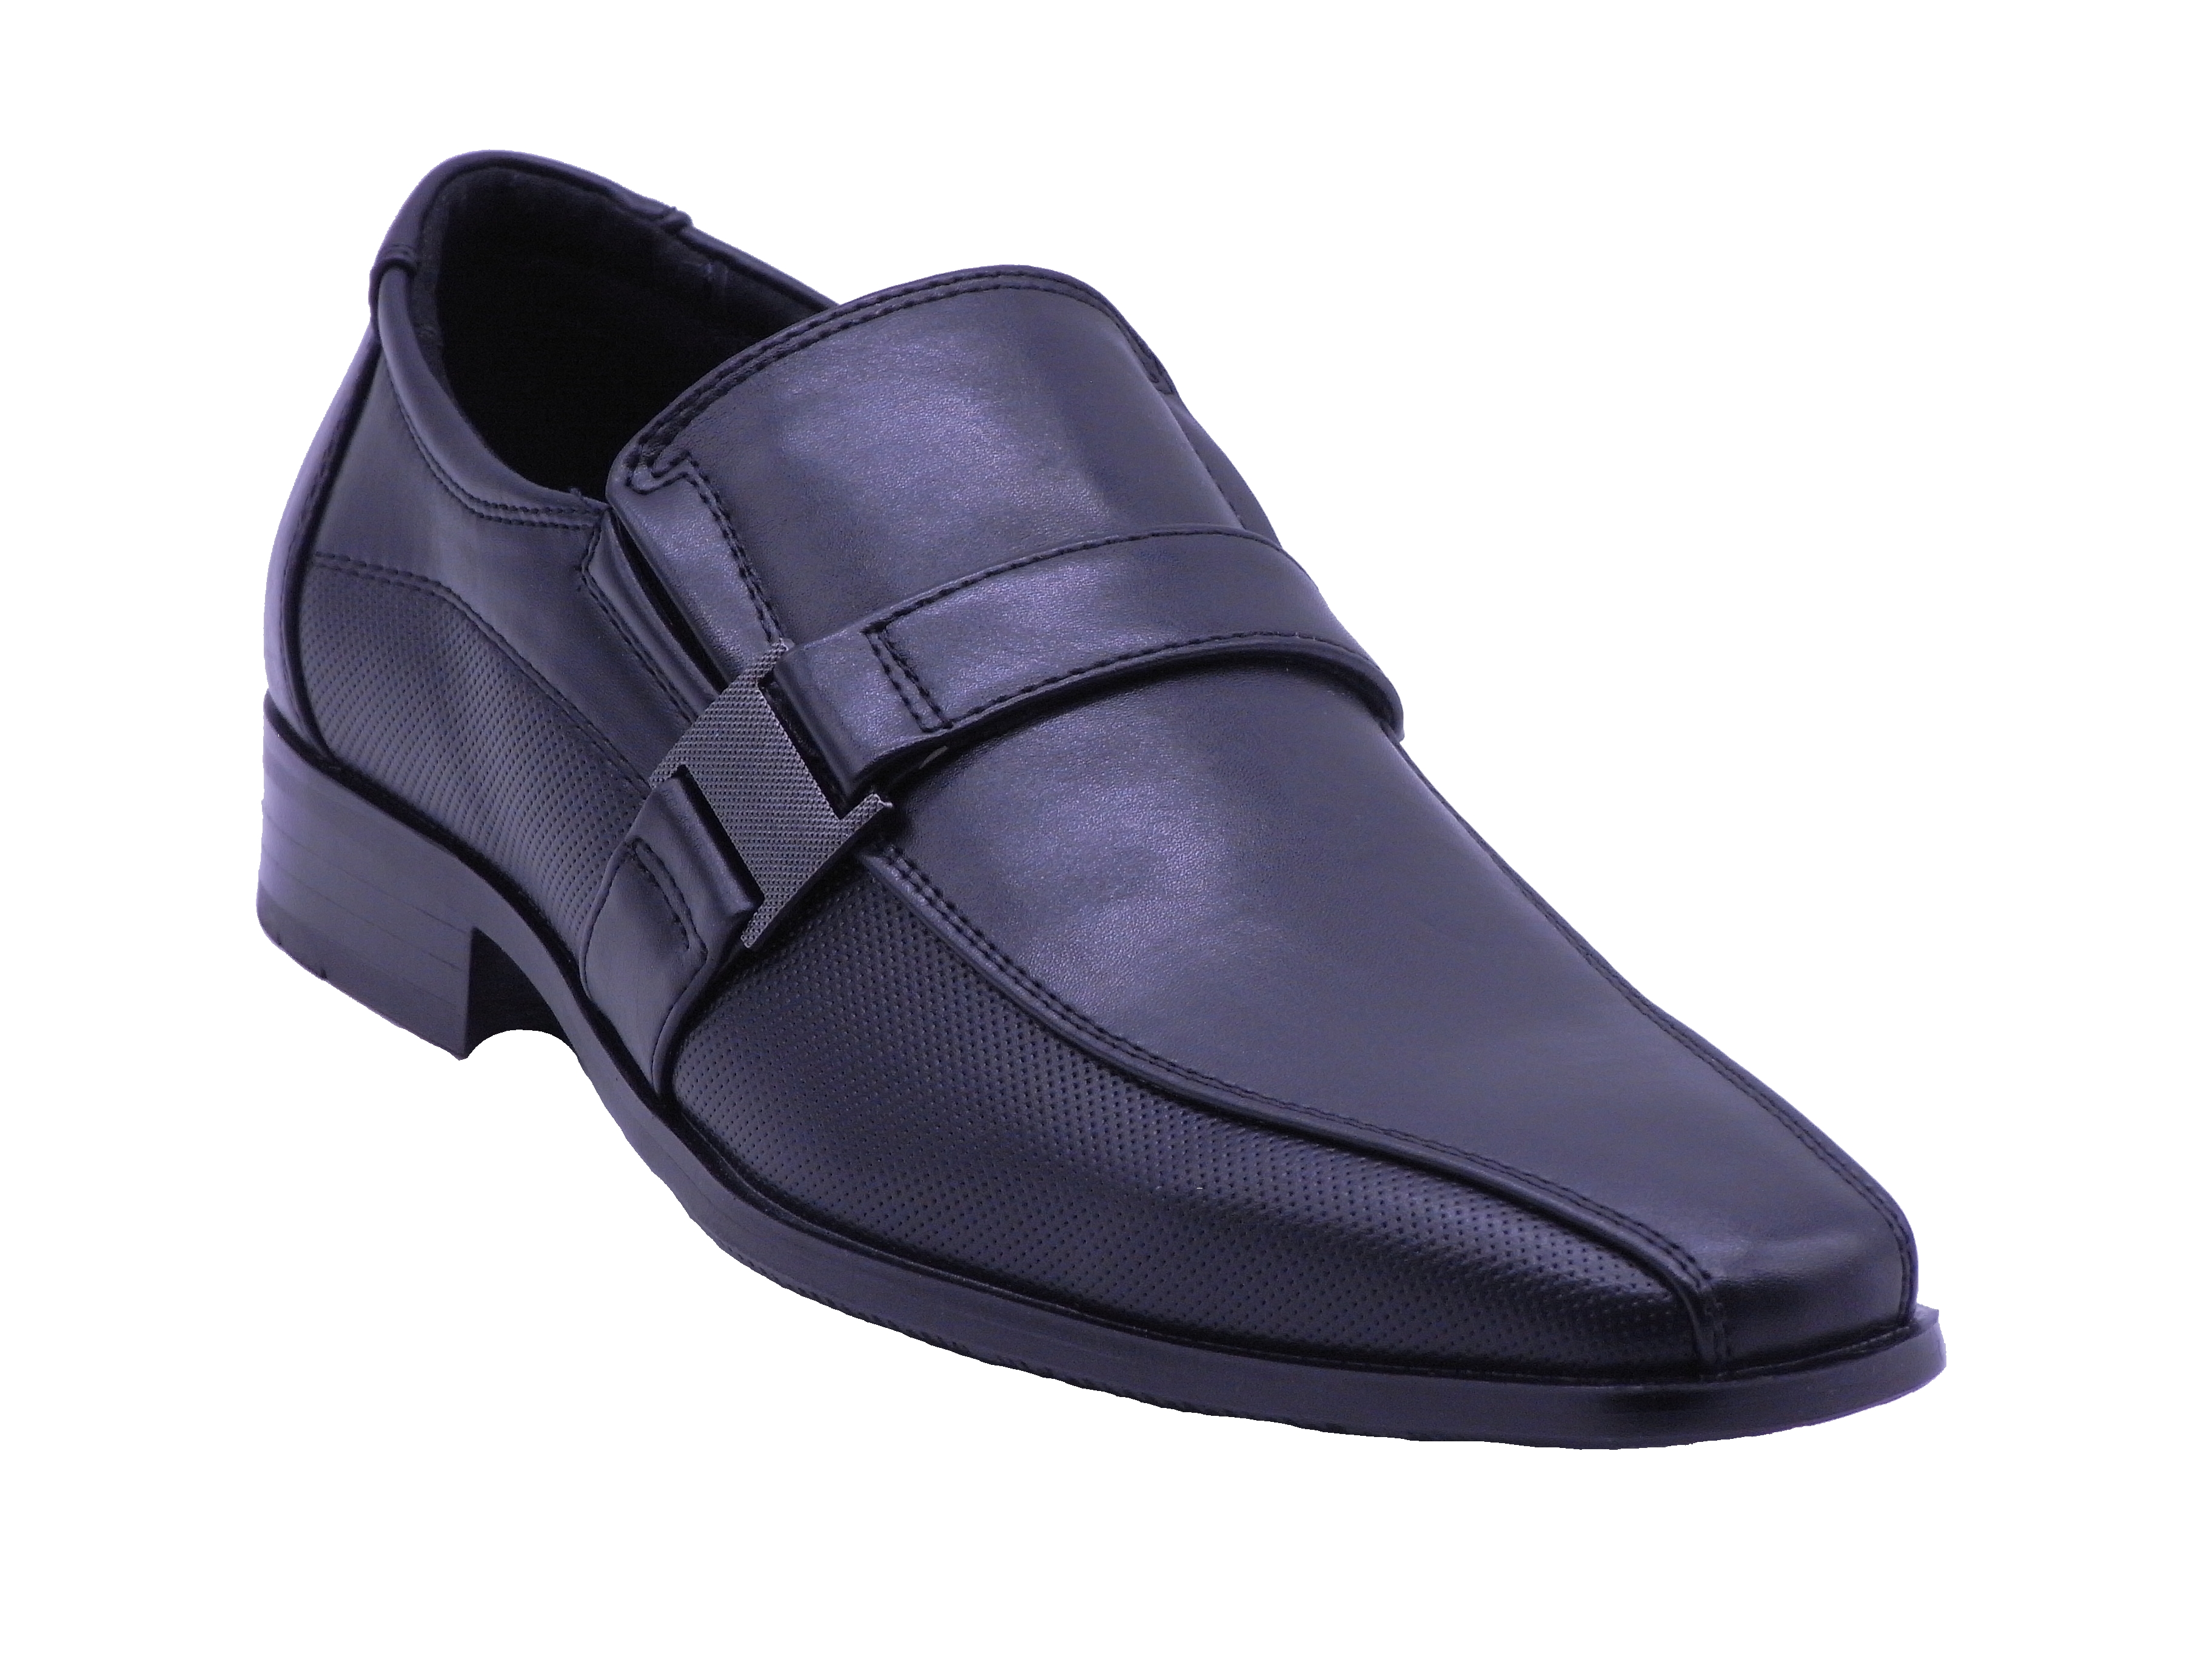 Men Shoes Slip On Strap Loafer Black Color Size US8.5 - image 1 of 5